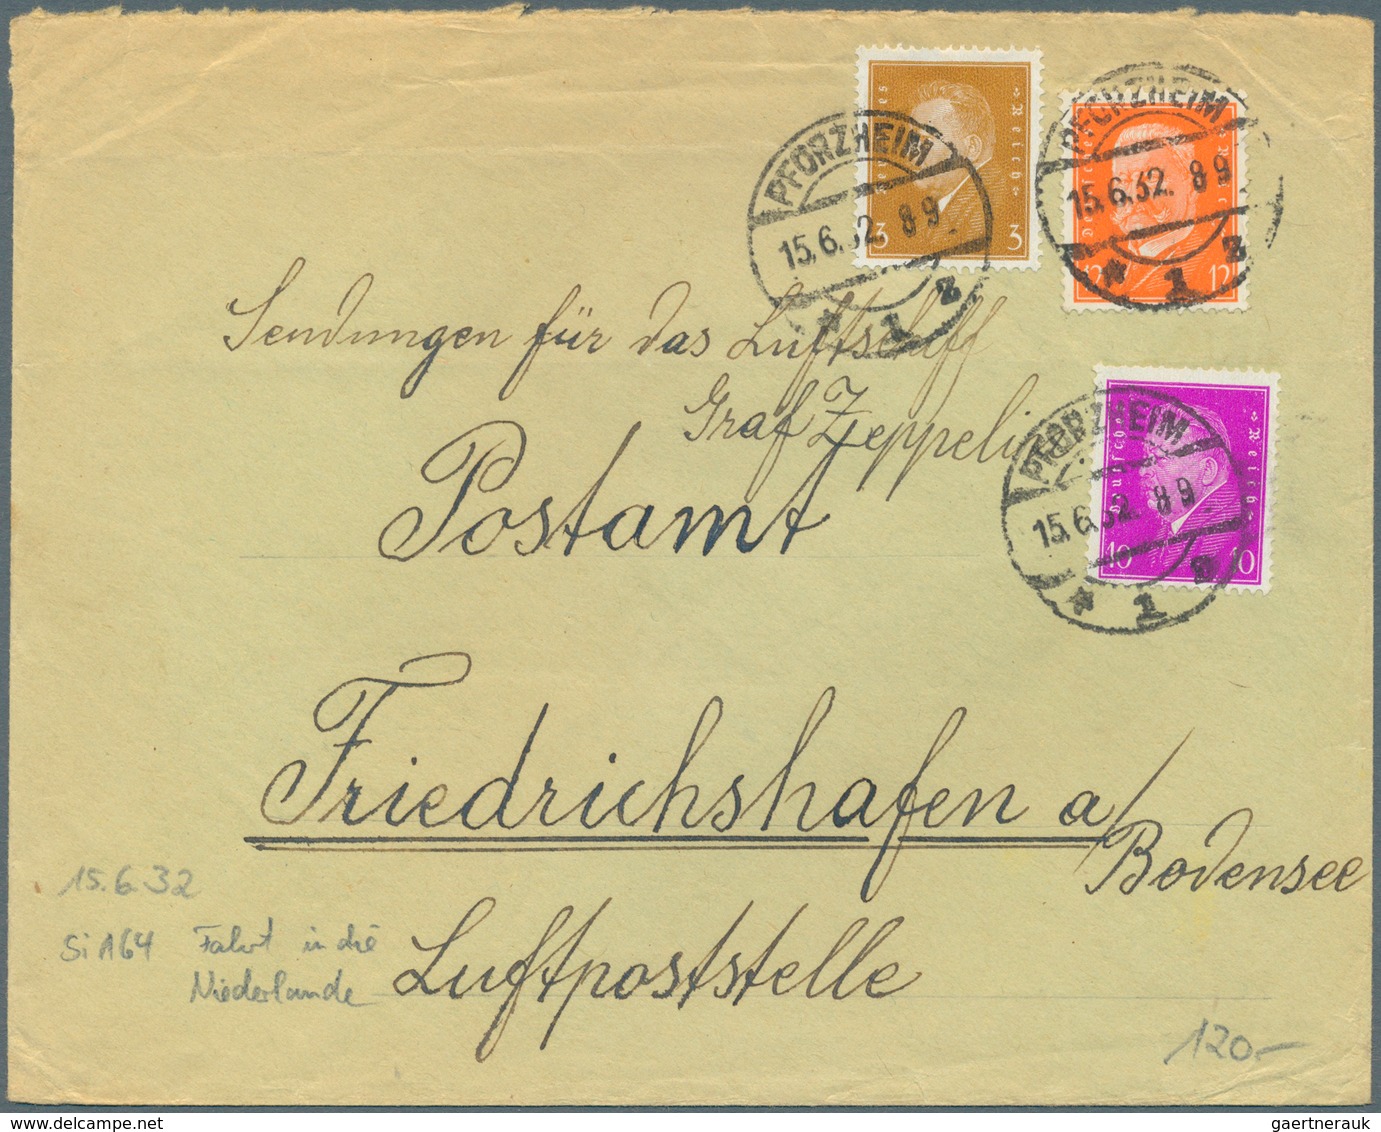 24845 Zeppelinpost Deutschland: 1929/33, 125 Briefe adressiert nach Friedrichshafen an das dortige Postamt